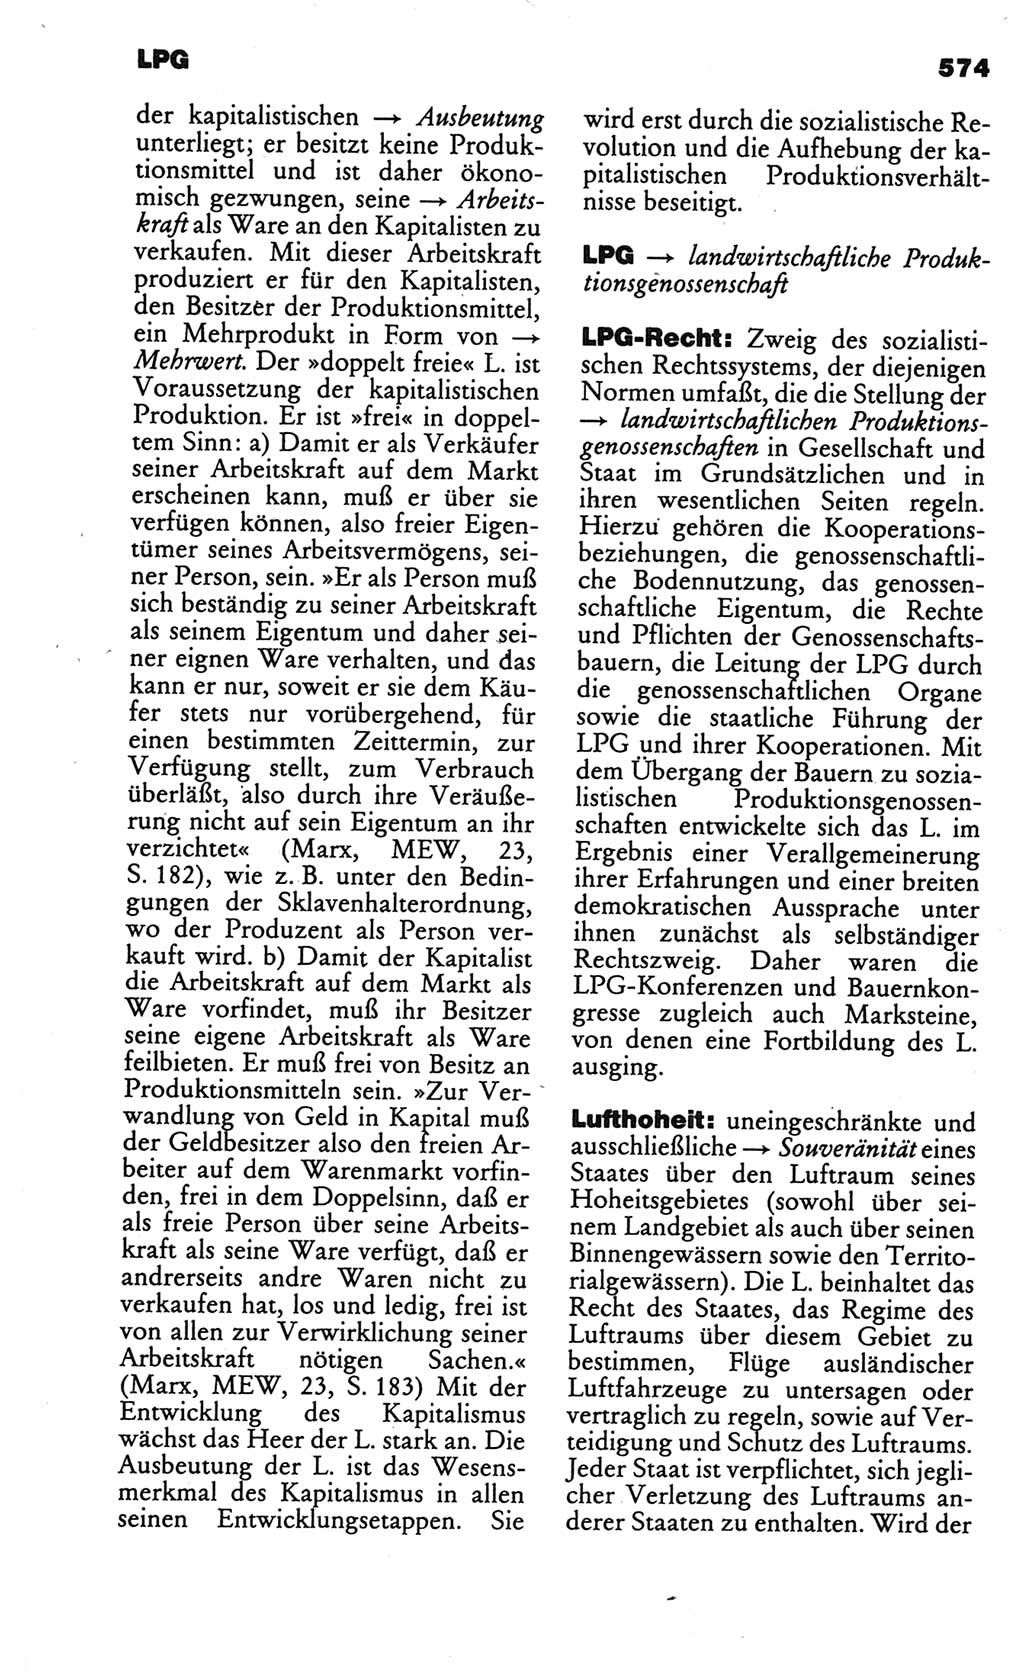 Kleines politisches Wörterbuch [Deutsche Demokratische Republik (DDR)] 1986, Seite 574 (Kl. pol. Wb. DDR 1986, S. 574)